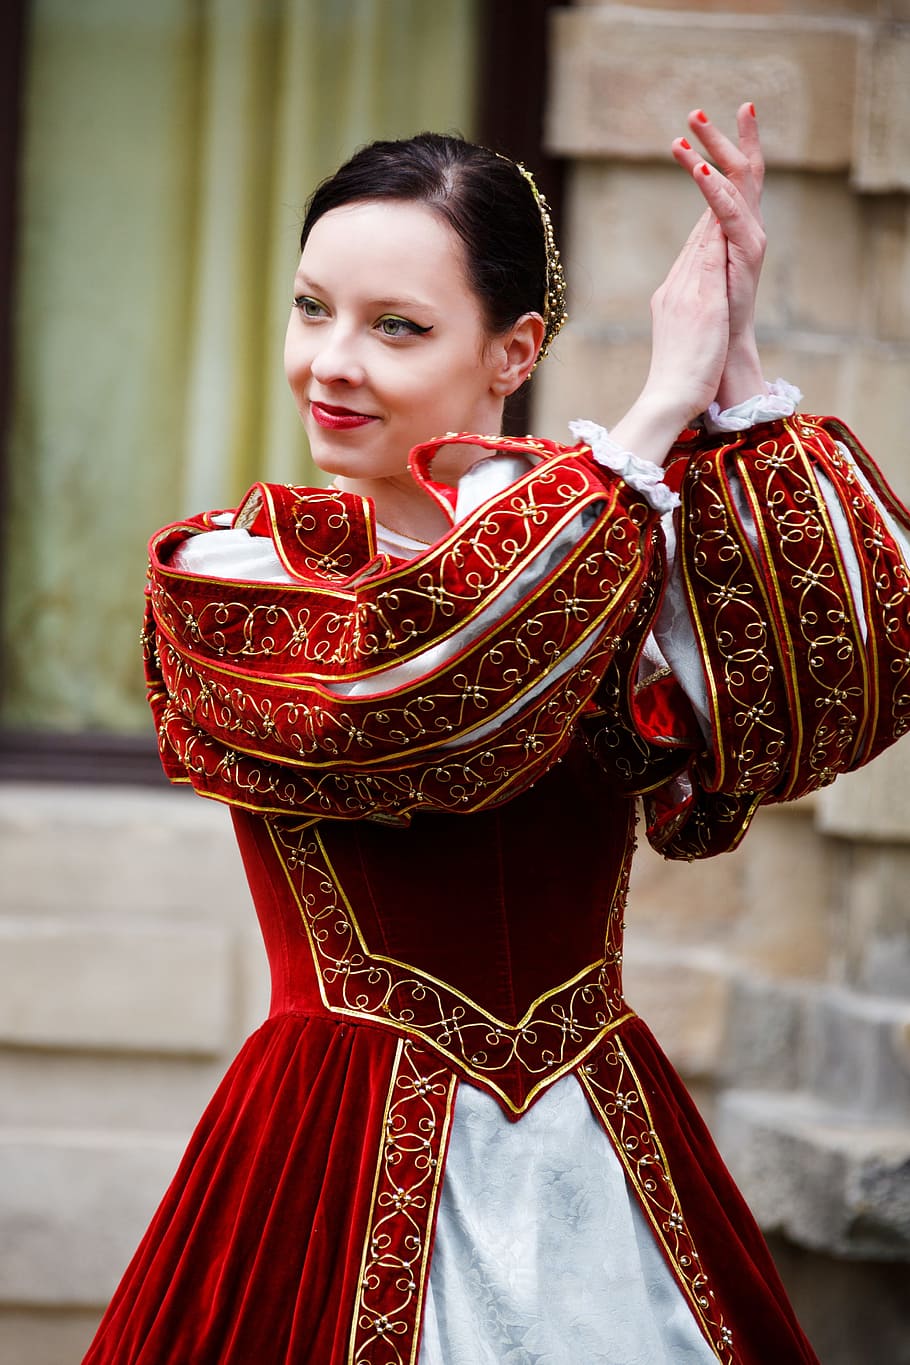 女性, 身に着けている, 赤, 白, 伝統的, ドレス, 拍手, 手, 中世, ダンス